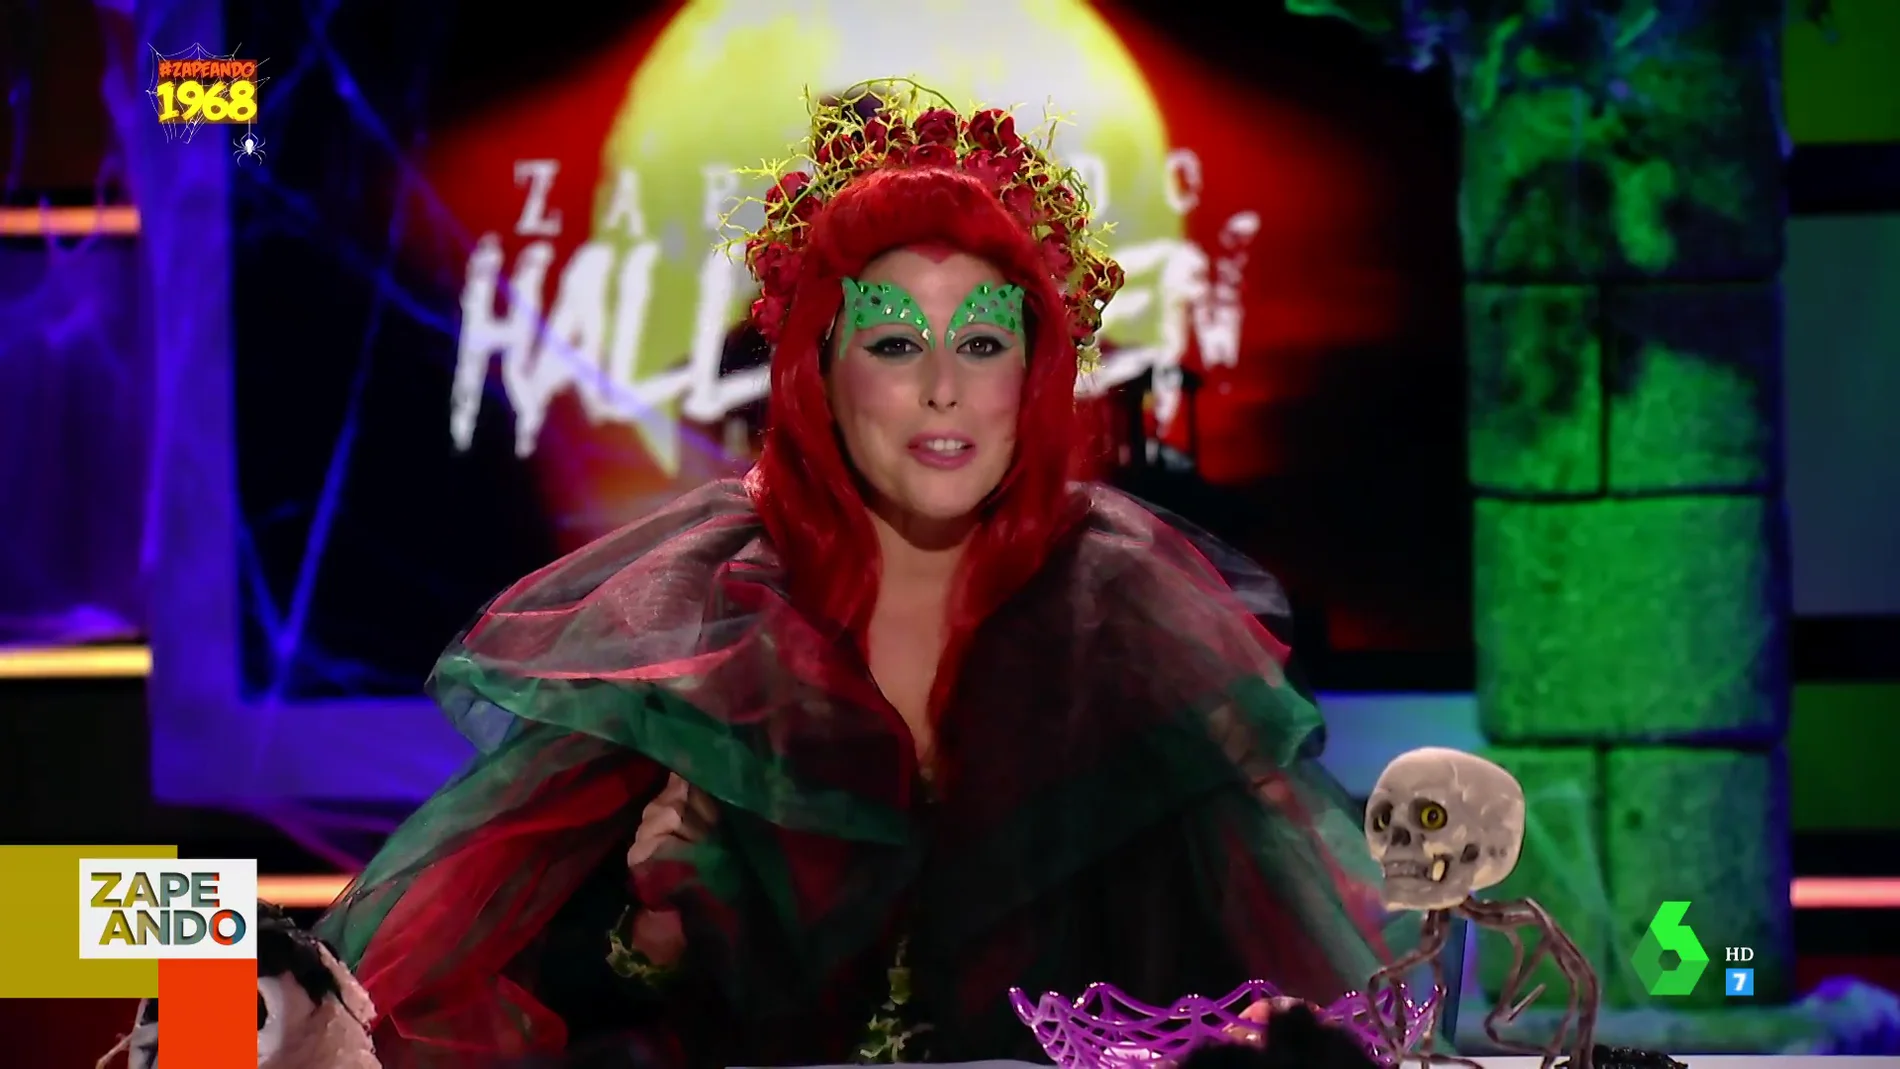  La reacción de Valeria Ros ante su disfraz de Halloween: "Estoy más buena así que de normal" 